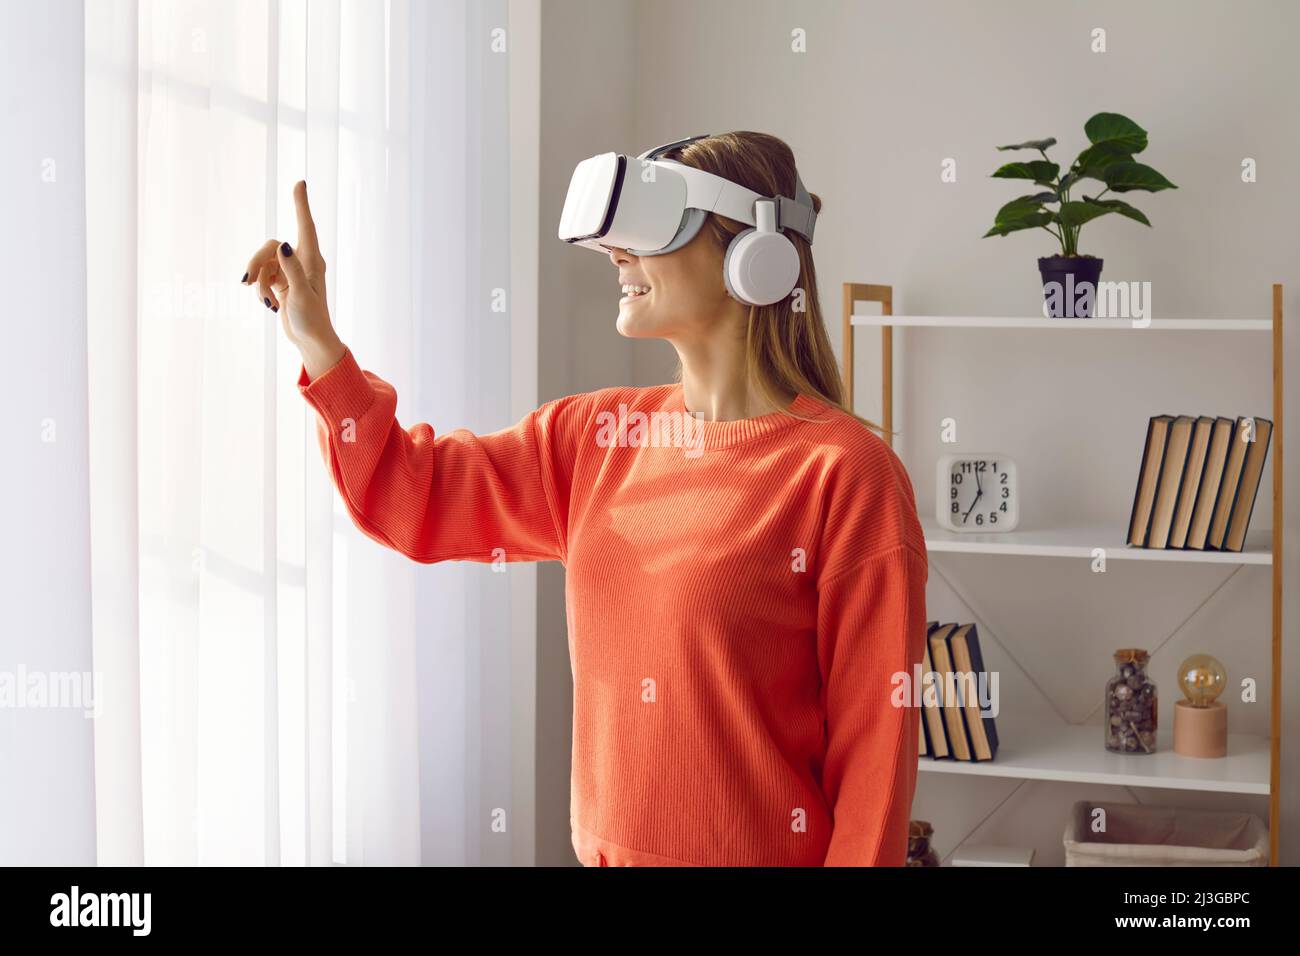 Femme heureuse portant un micro-casque VR innovant, expérimente la réalité virtuelle et joue à des jeux Banque D'Images